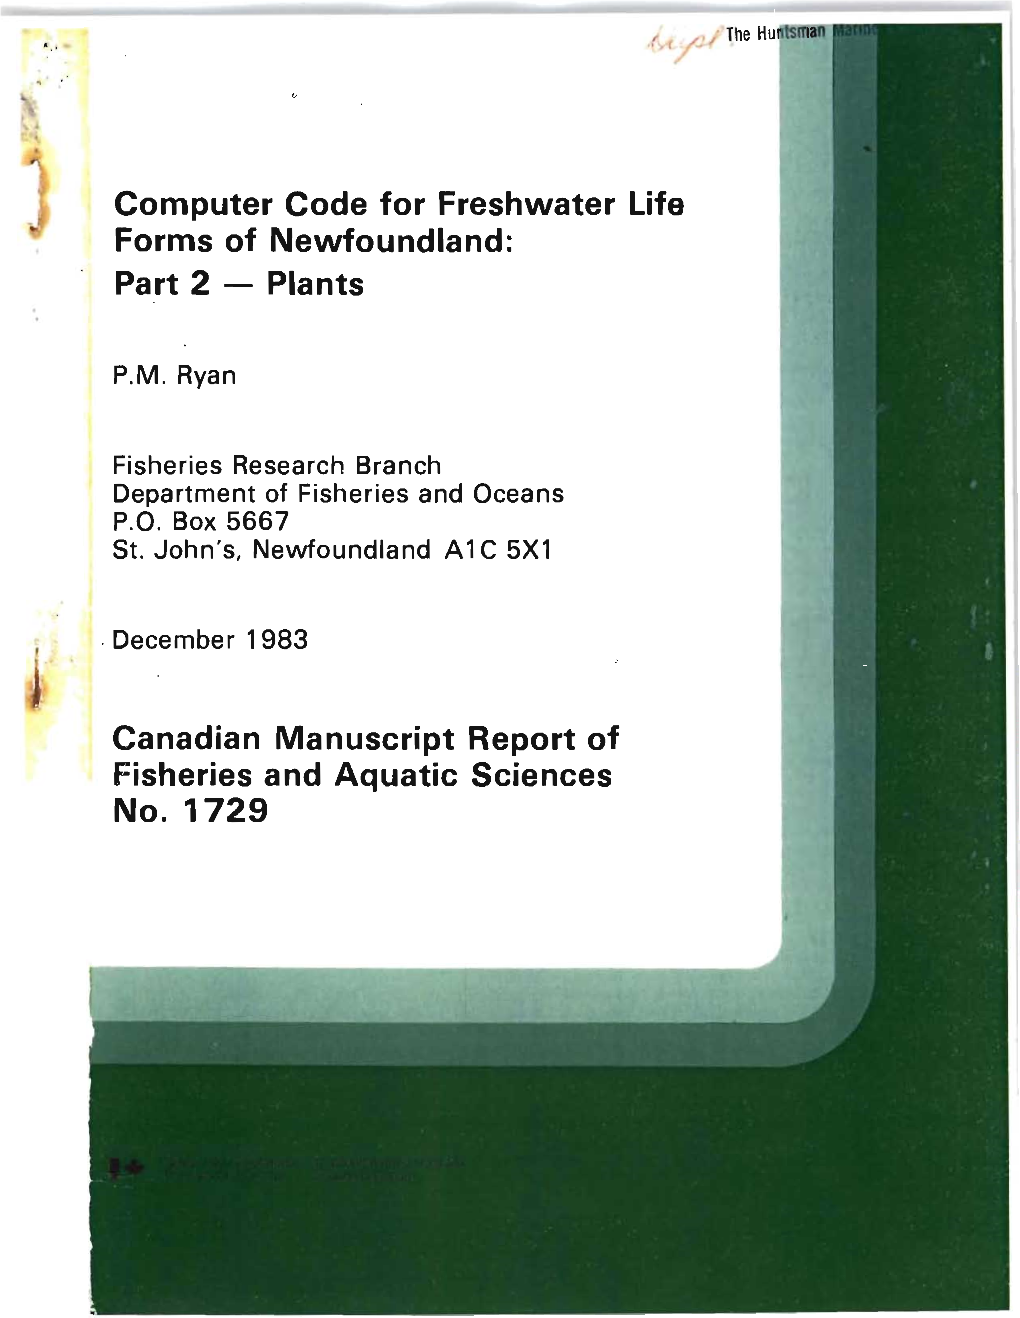 Plants Canadian Manuscript Report of Fisheries and Aquatic S